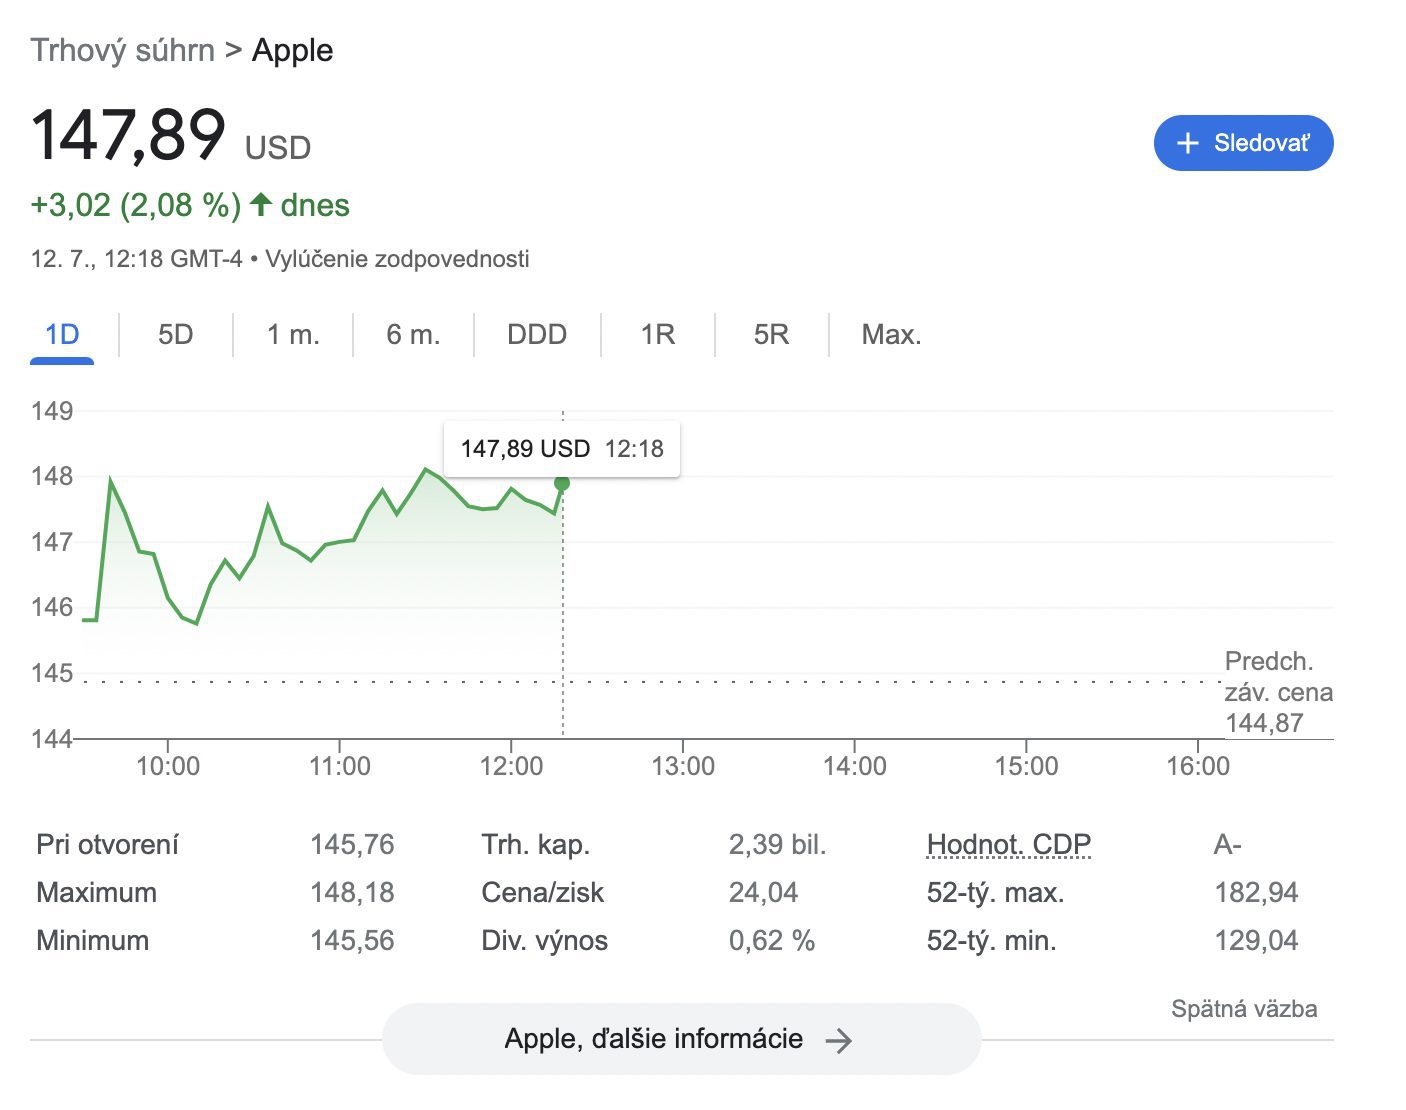 Aktuálna hodnota spoločnosti Apple znázornená na grafe